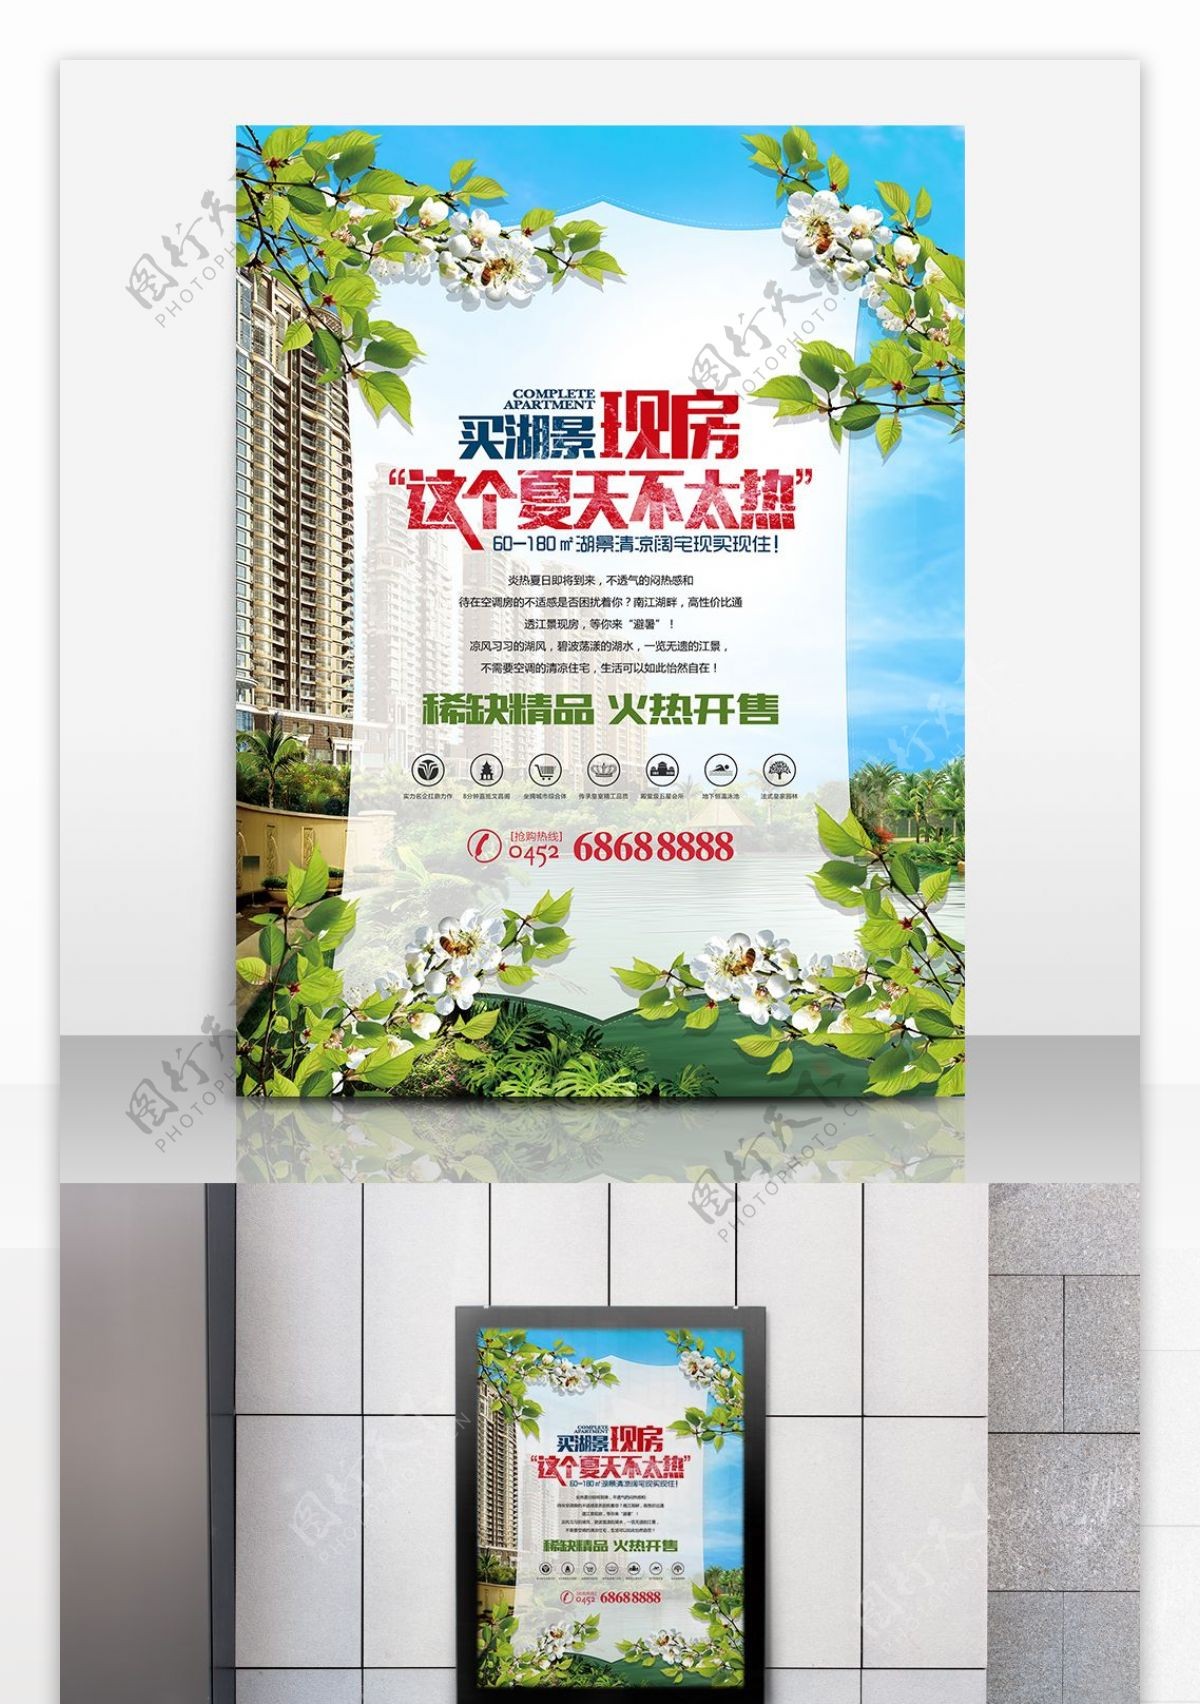 清新自然房地产宣传海报设计